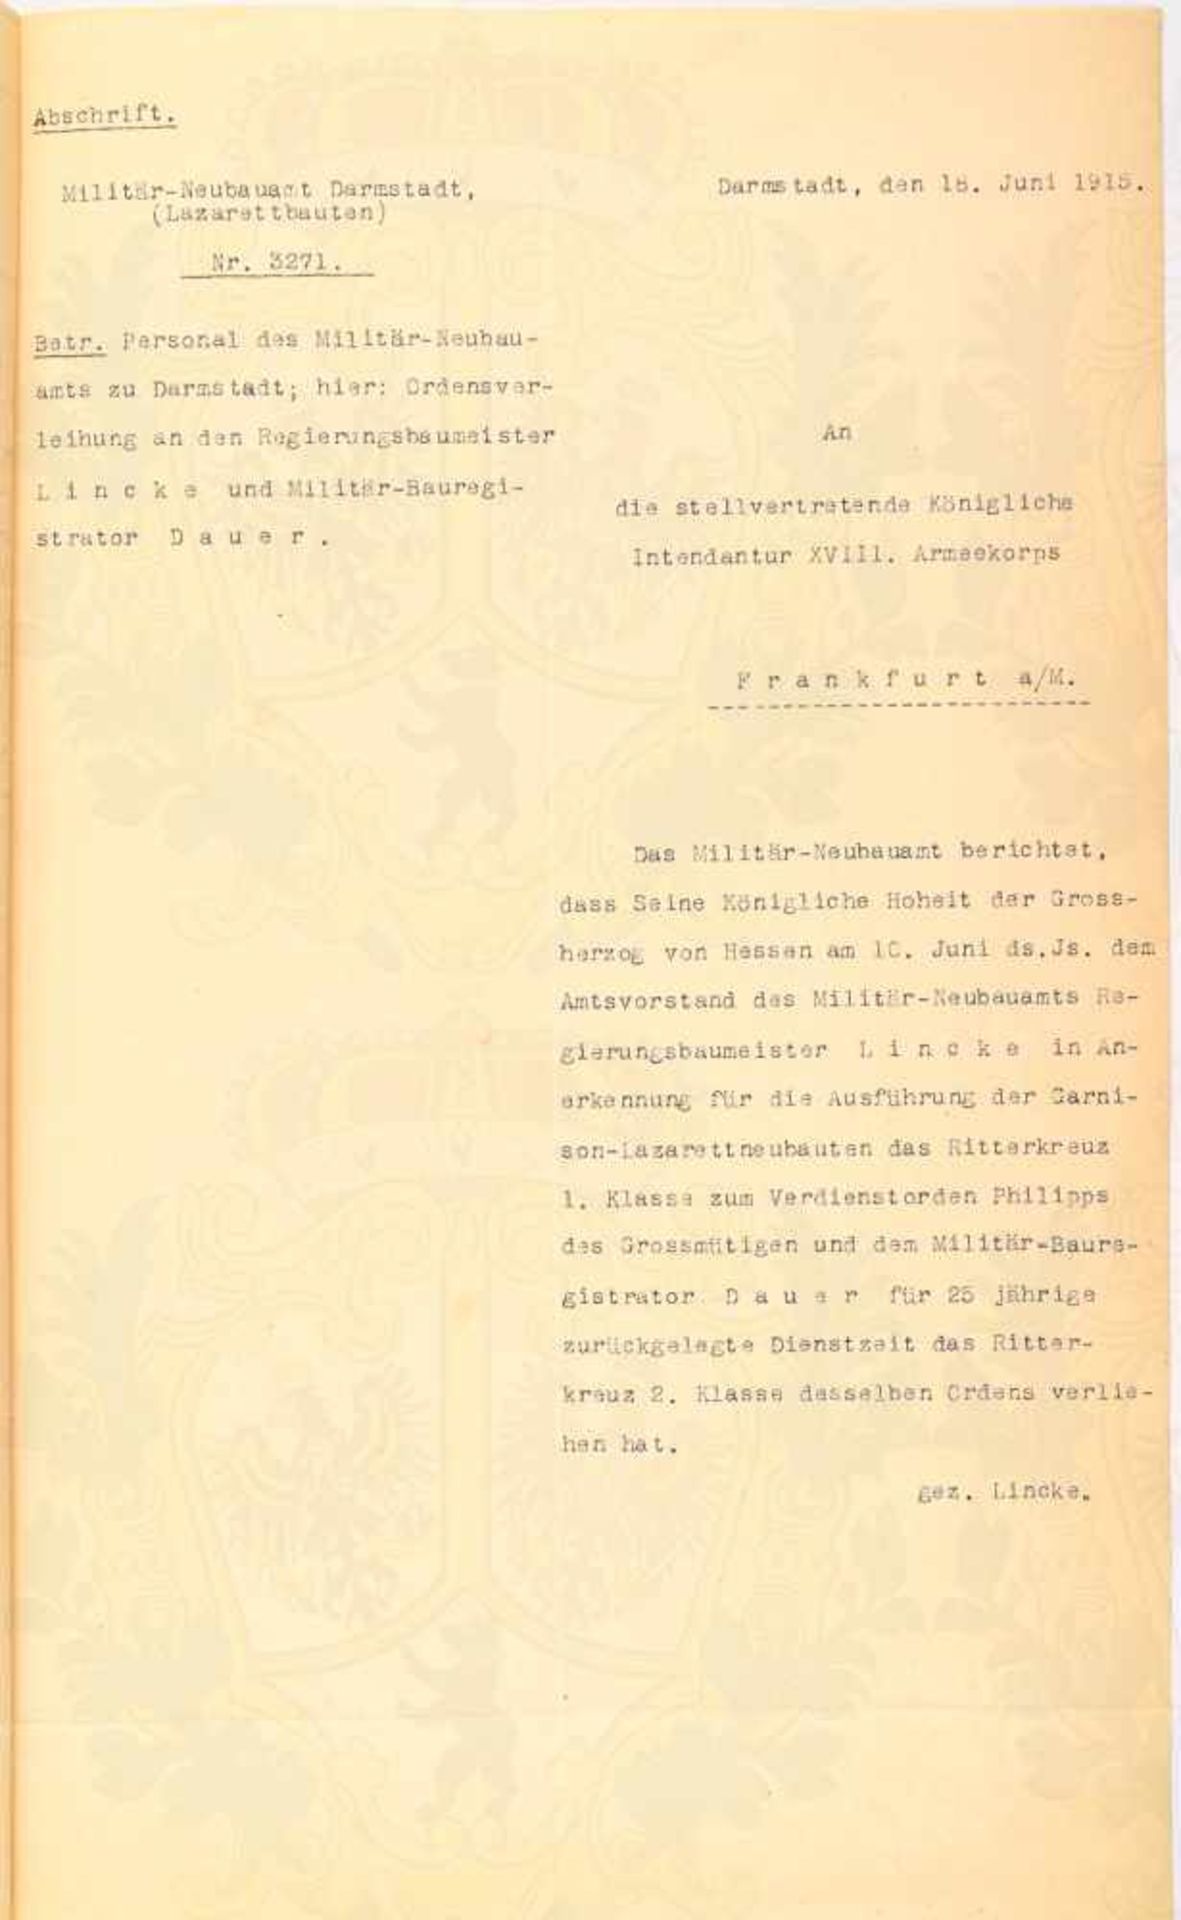 VORSCHLAG ZUR ORDENSVERLEIHUNG zum Ritterkreuz 2. Klasse zum Verdienstorden Philipp des - Bild 2 aus 2